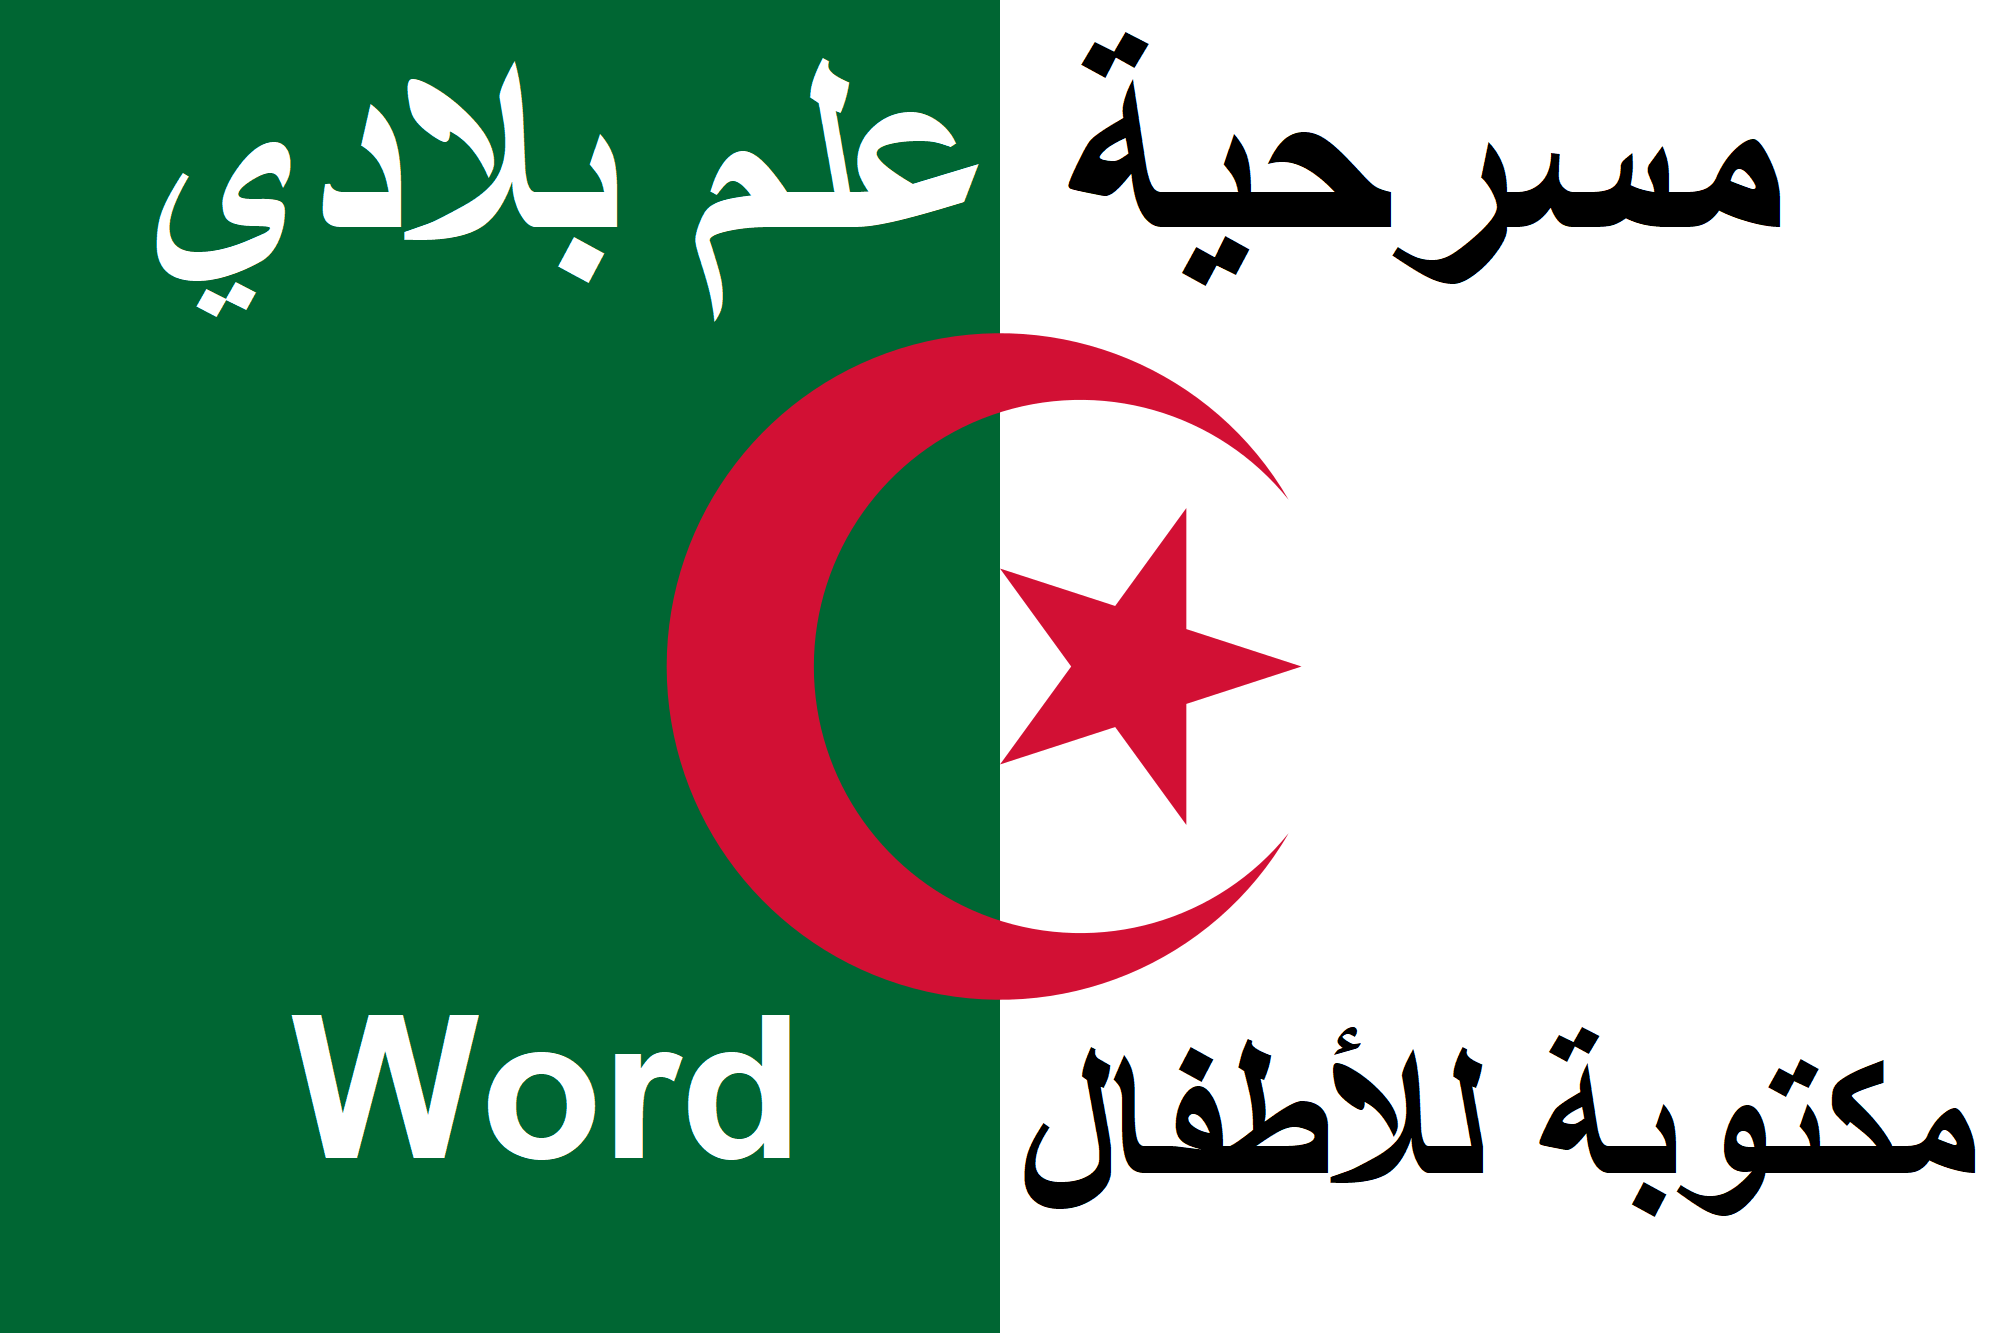 مسرحية علم بلادي (الجزائر)